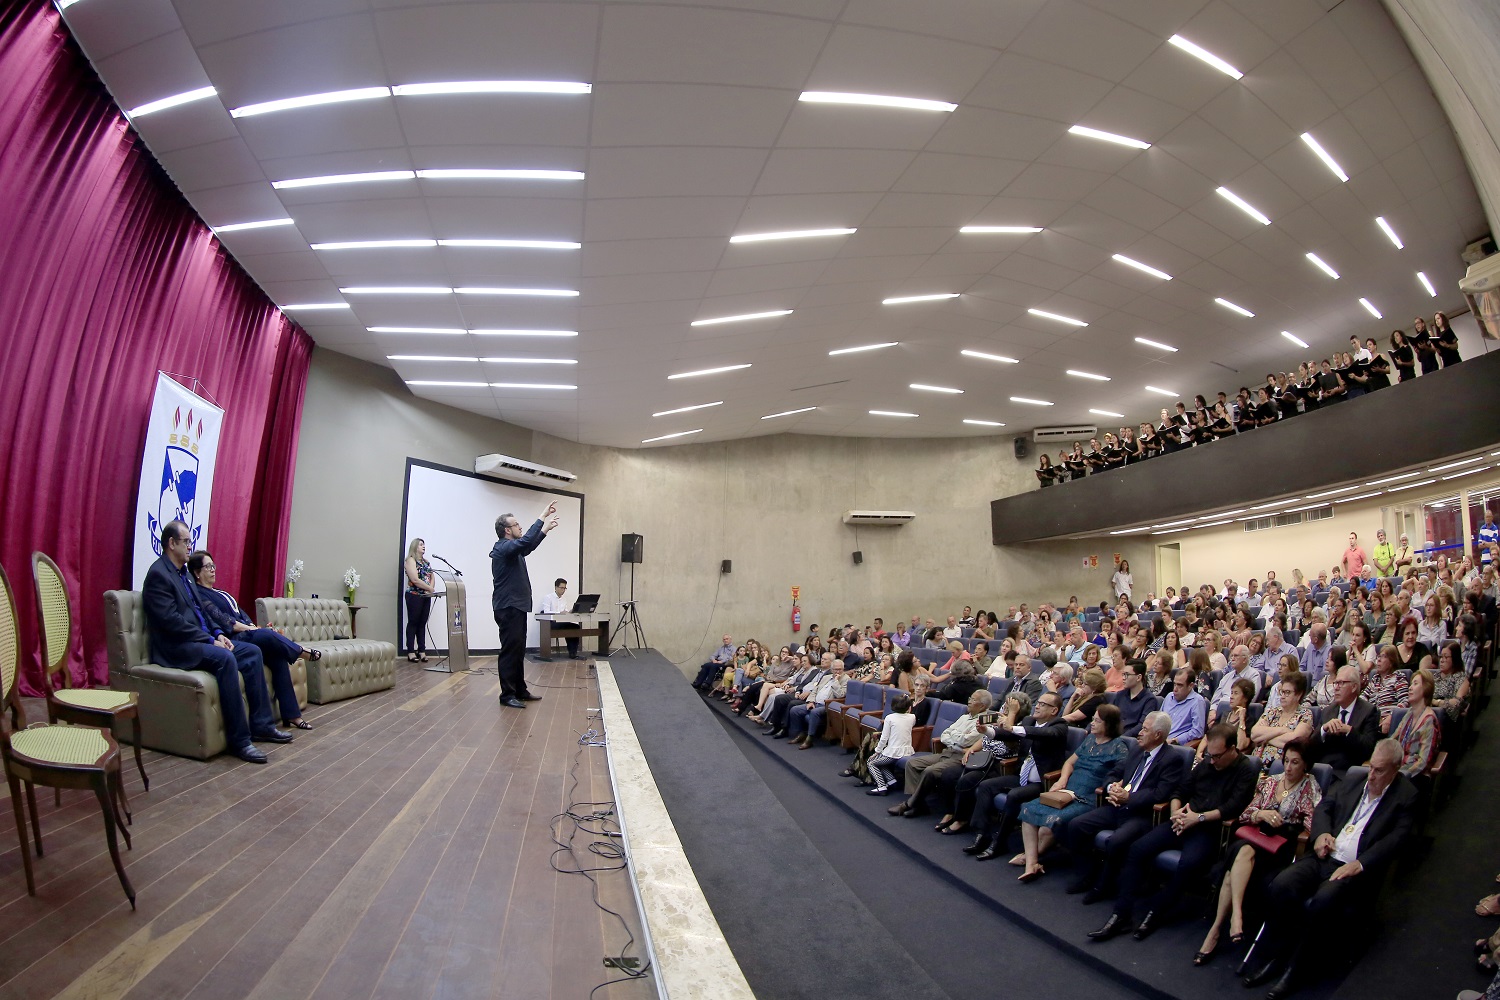 Sessão solene ocorreu na última sexta-feira, 17, no auditório da Reitoria. (fotos: Paulo Marques/bolsista Ascom UFS)